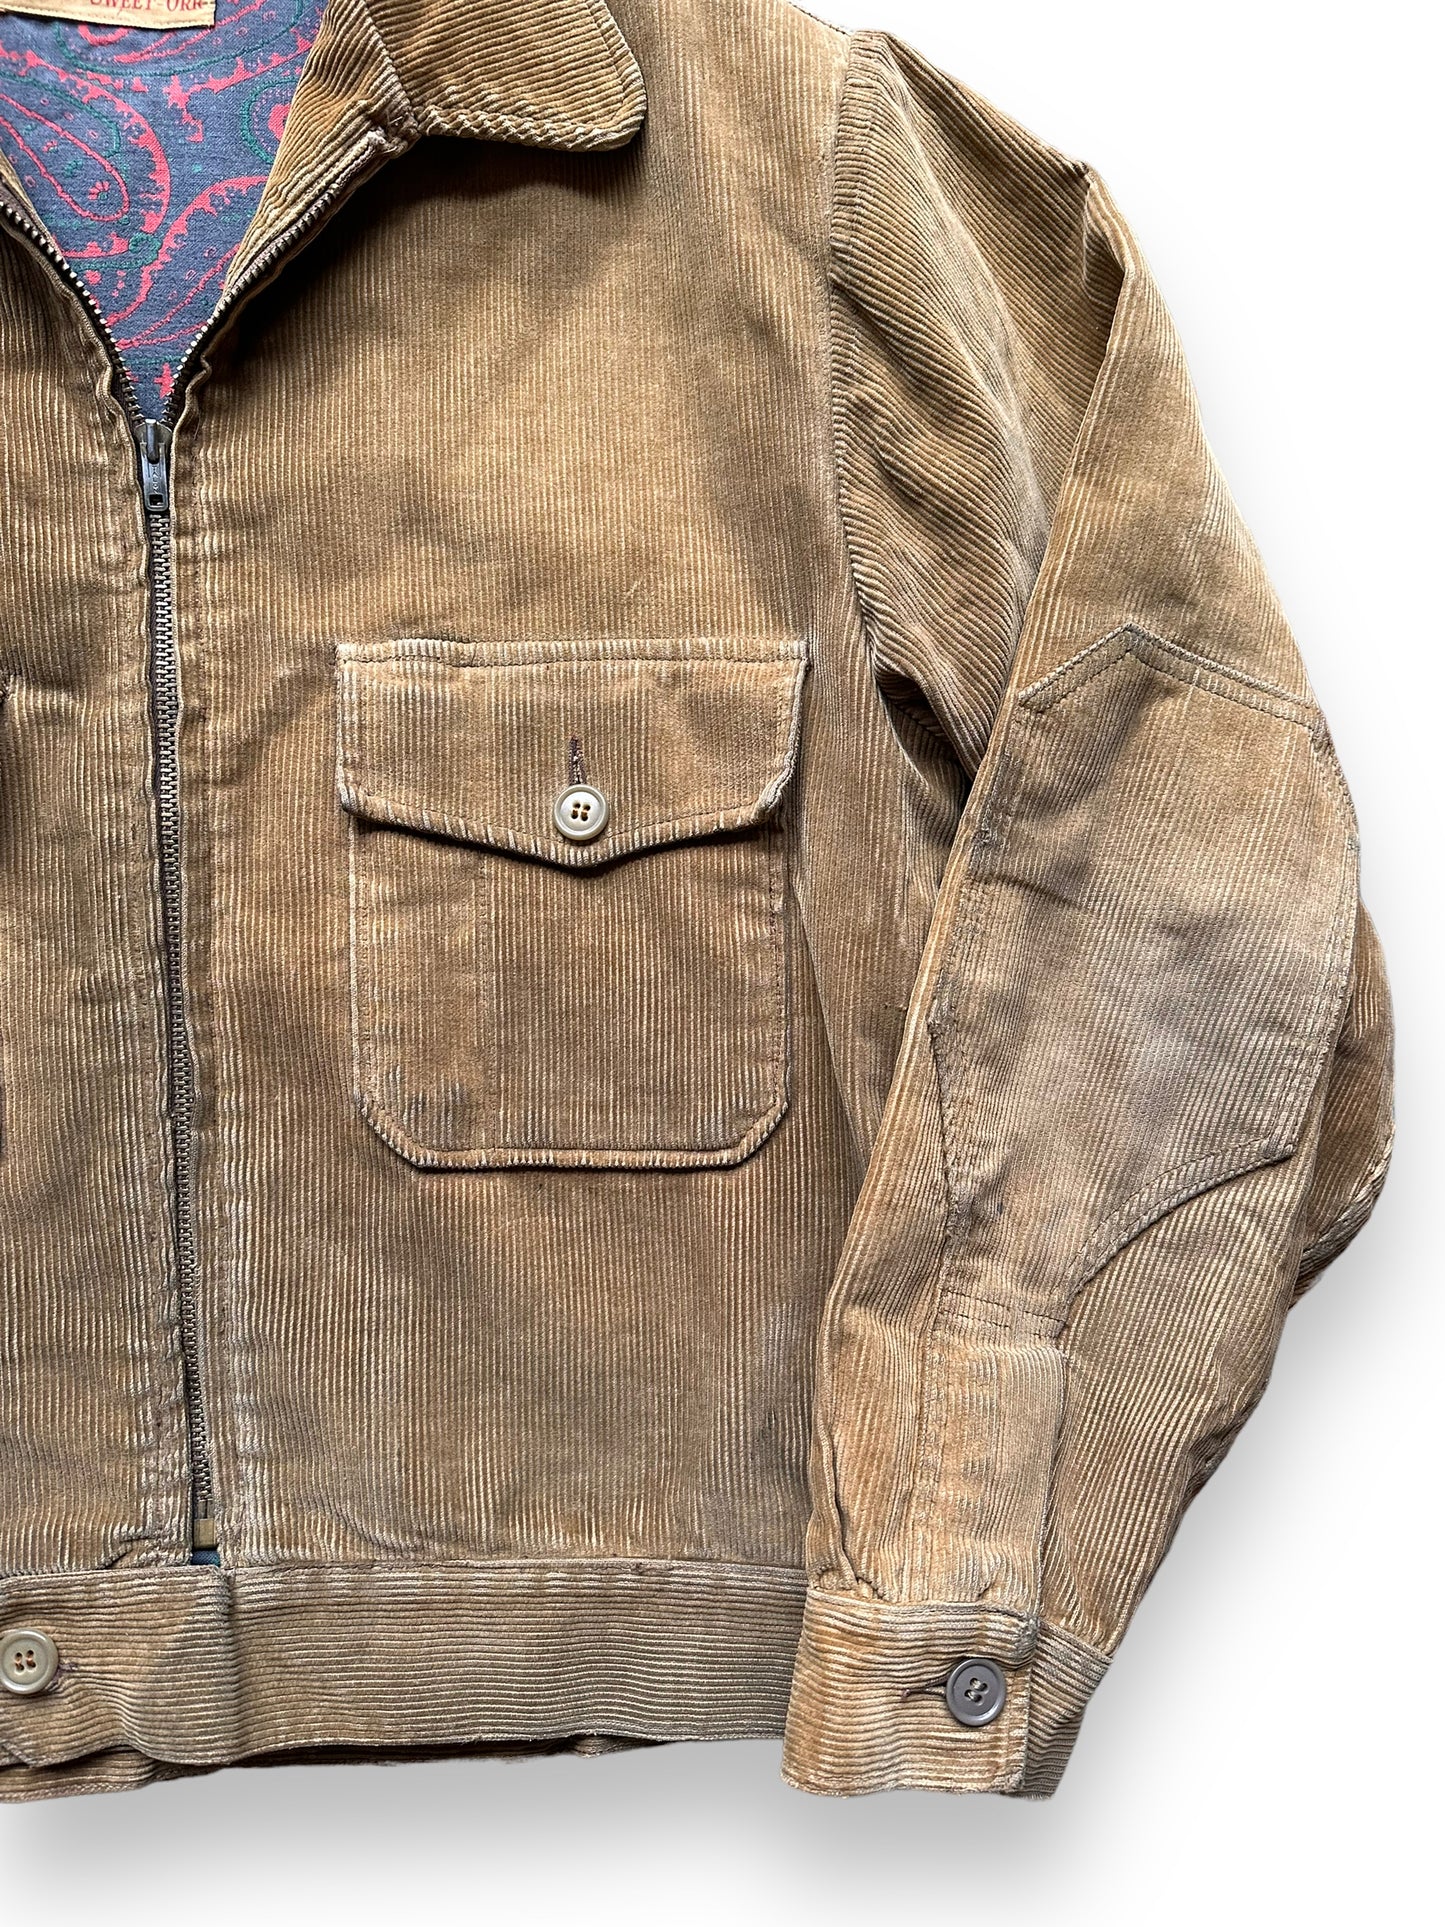 Elbow Detail on Left Sleeve of Vintage Meadowfield by Sweet Orr Corduroy Jacket SZ L | Vintage Corduroy Jacket Seattle | Barn Owl Vintage